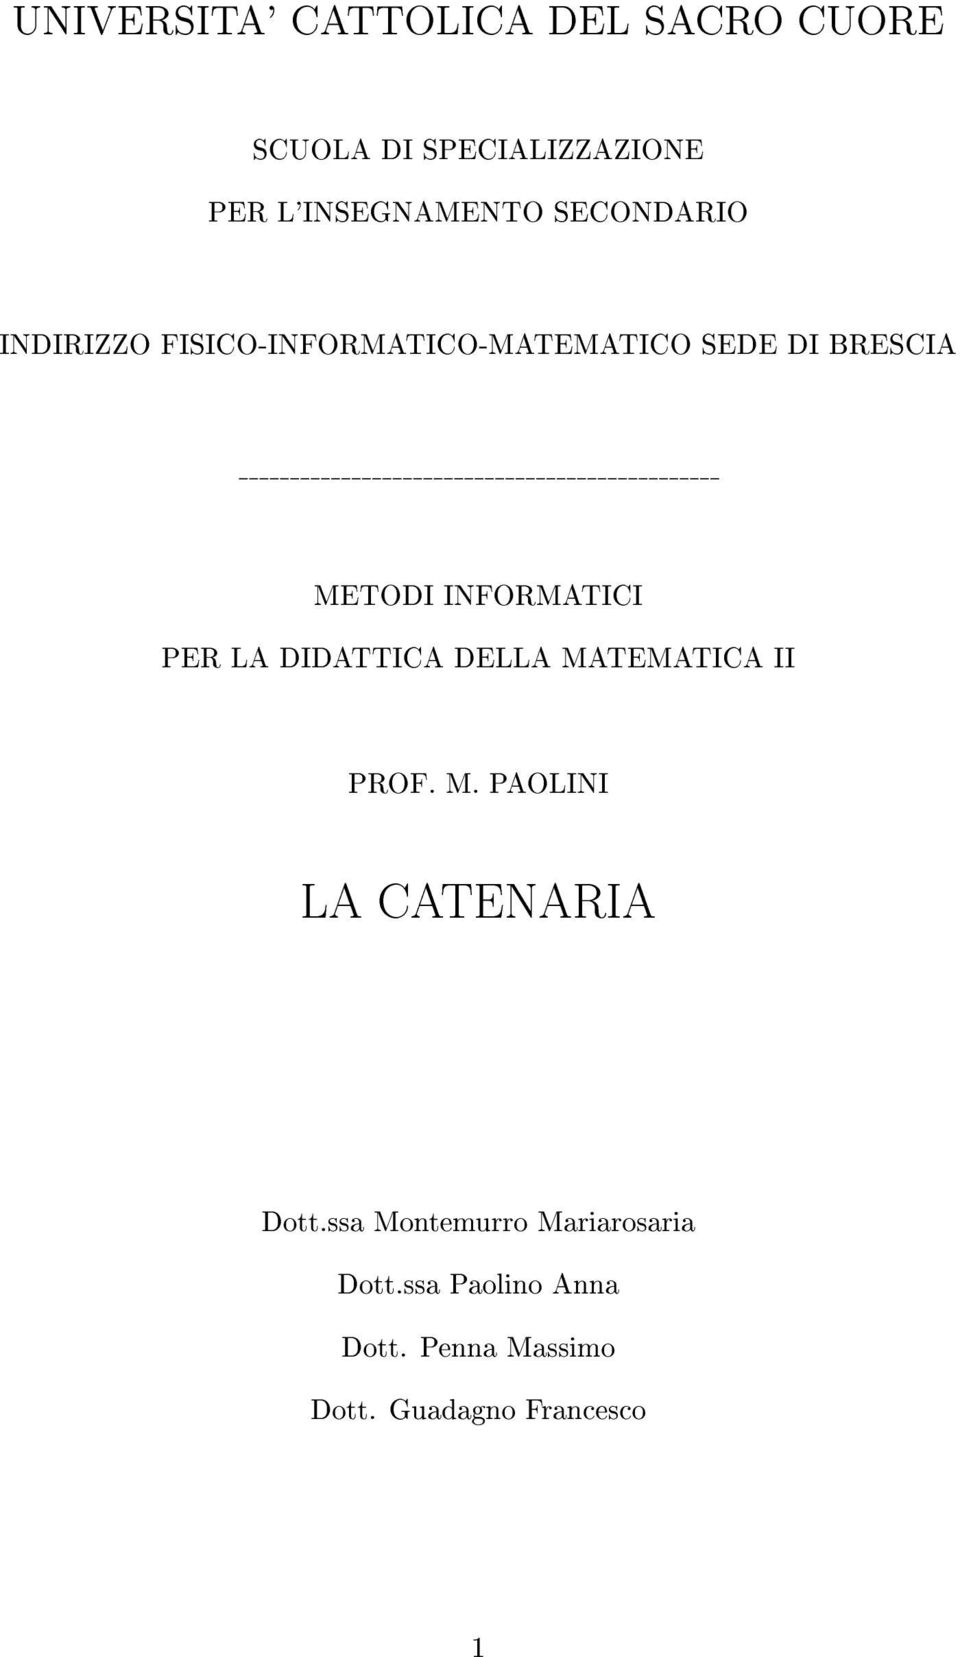 INFORMATICI PER LA DIDATTICA DELLA MATEMATICA II PROF. M. PAOLINI LA CATENARIA Dott.